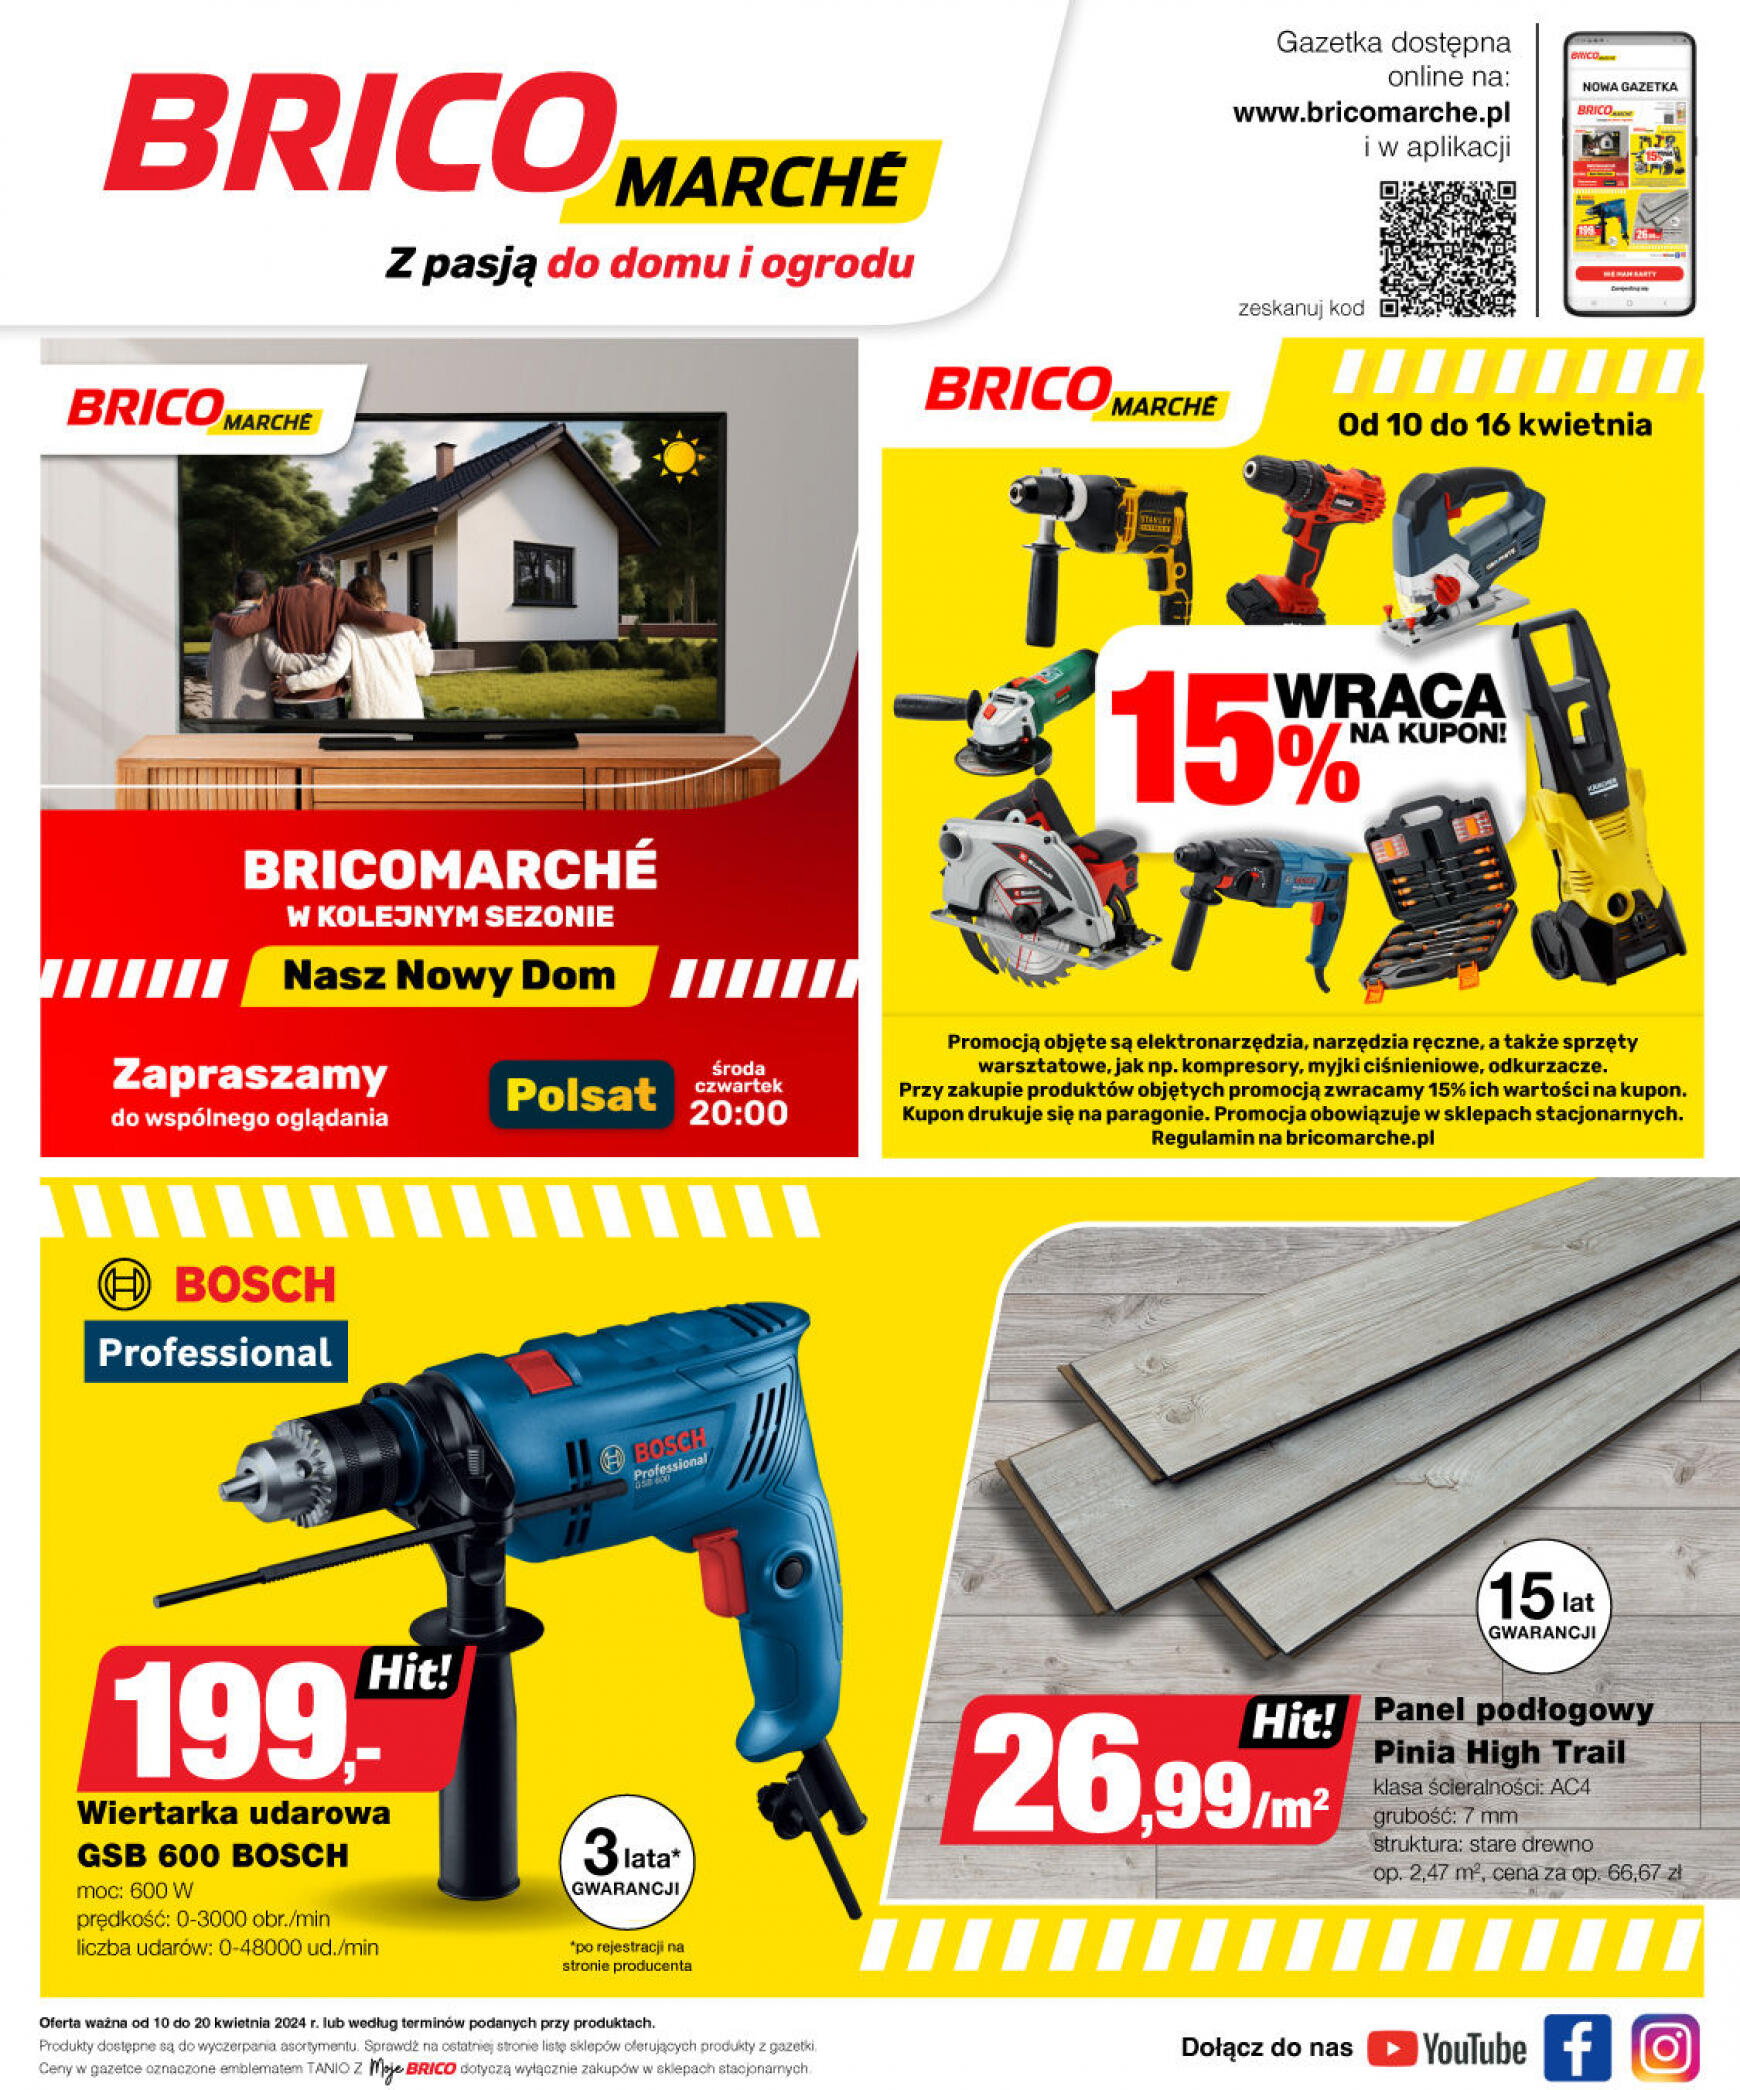 brico-marche - Bricomarché gazetka aktualna ważna od 10.04. - 20.04. - page: 21